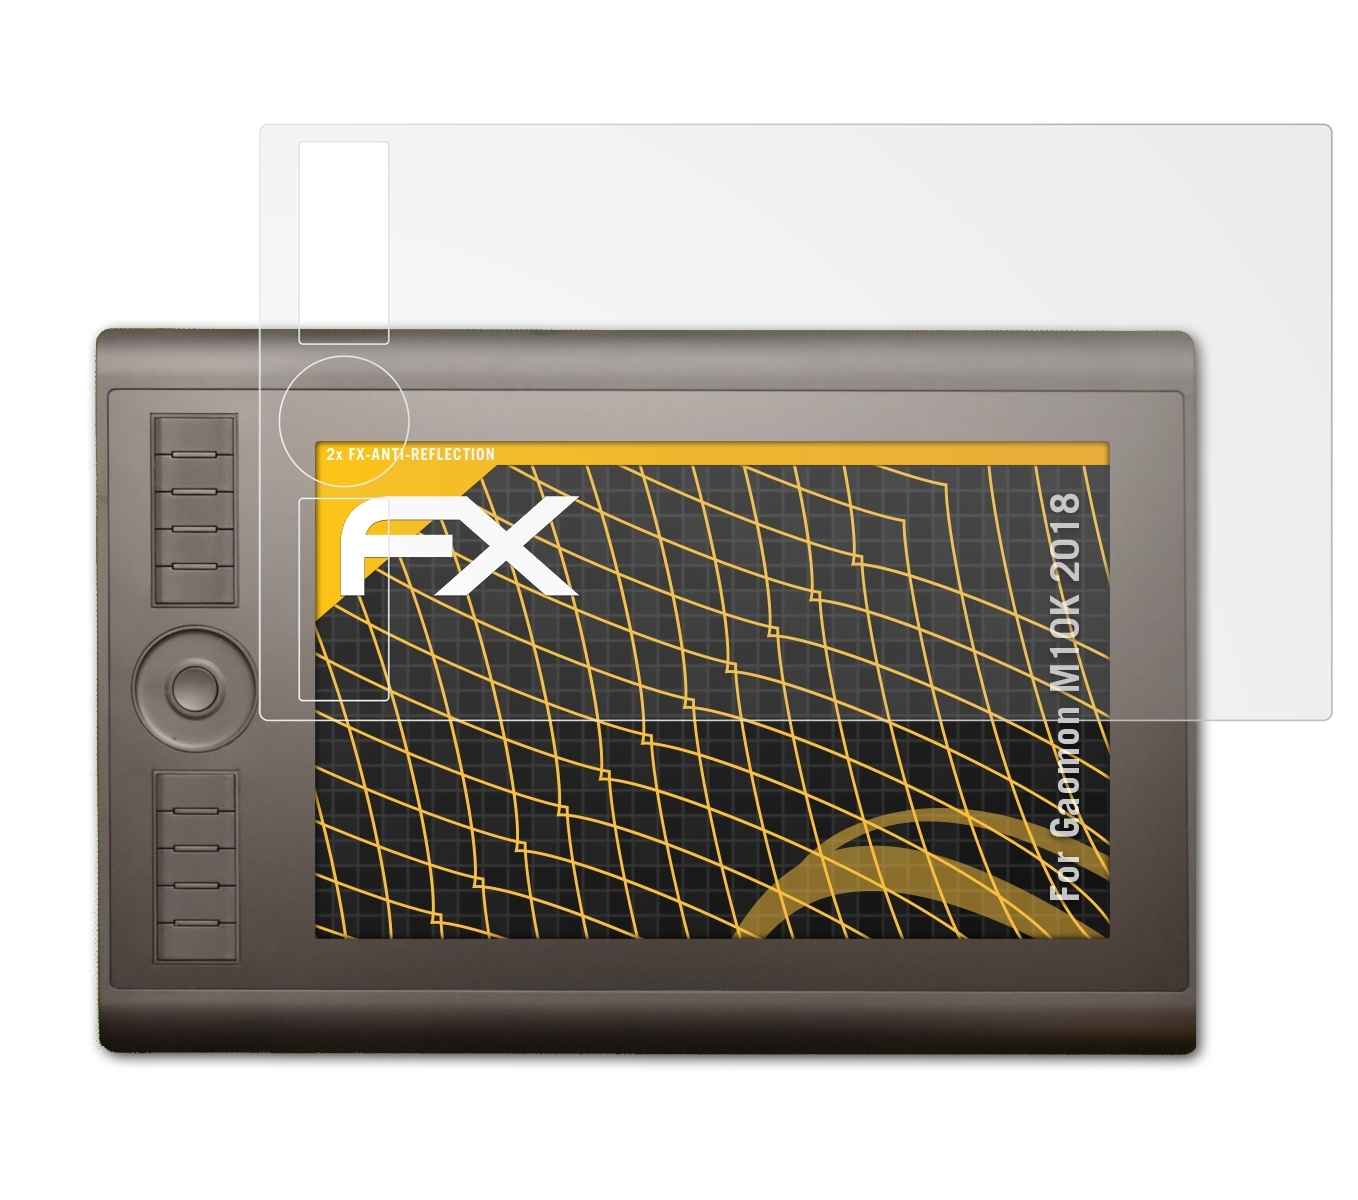 ATFOLIX 2x Displayschutz(für FX-Antireflex 2018) M10K Gaomon